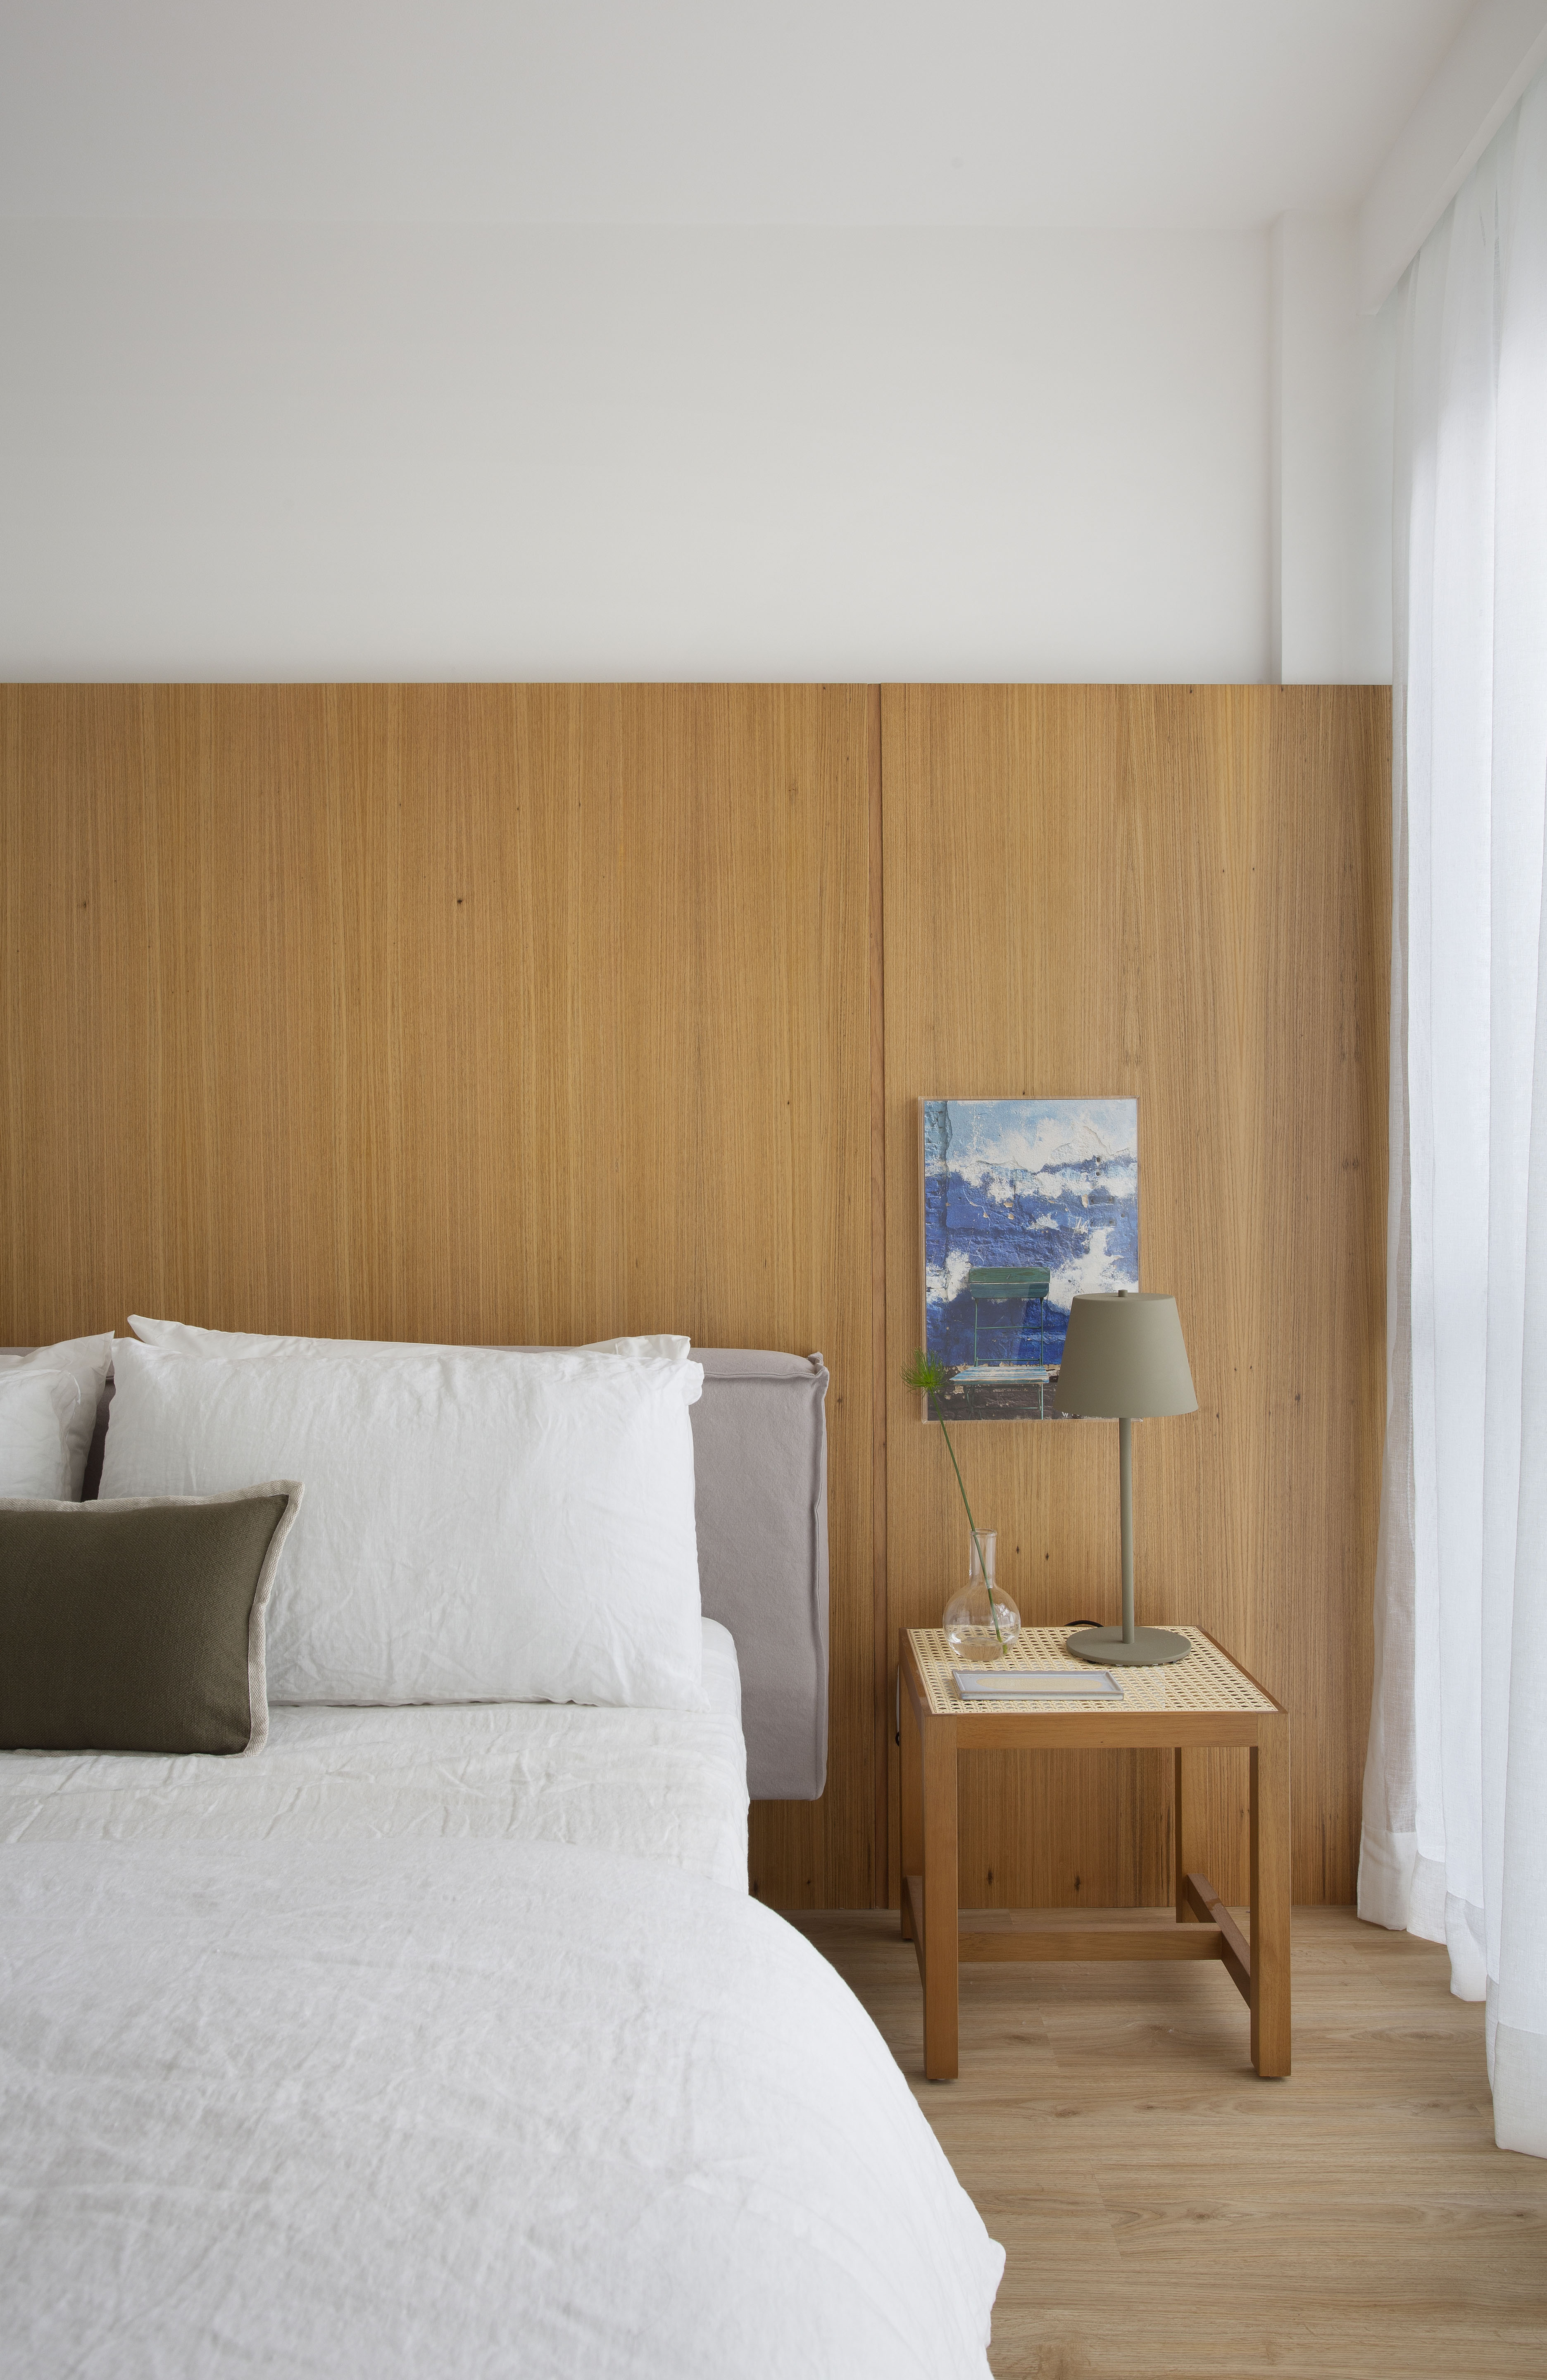 Quarto claro com cabeceira de madeira, cama de casal e cortina branca.